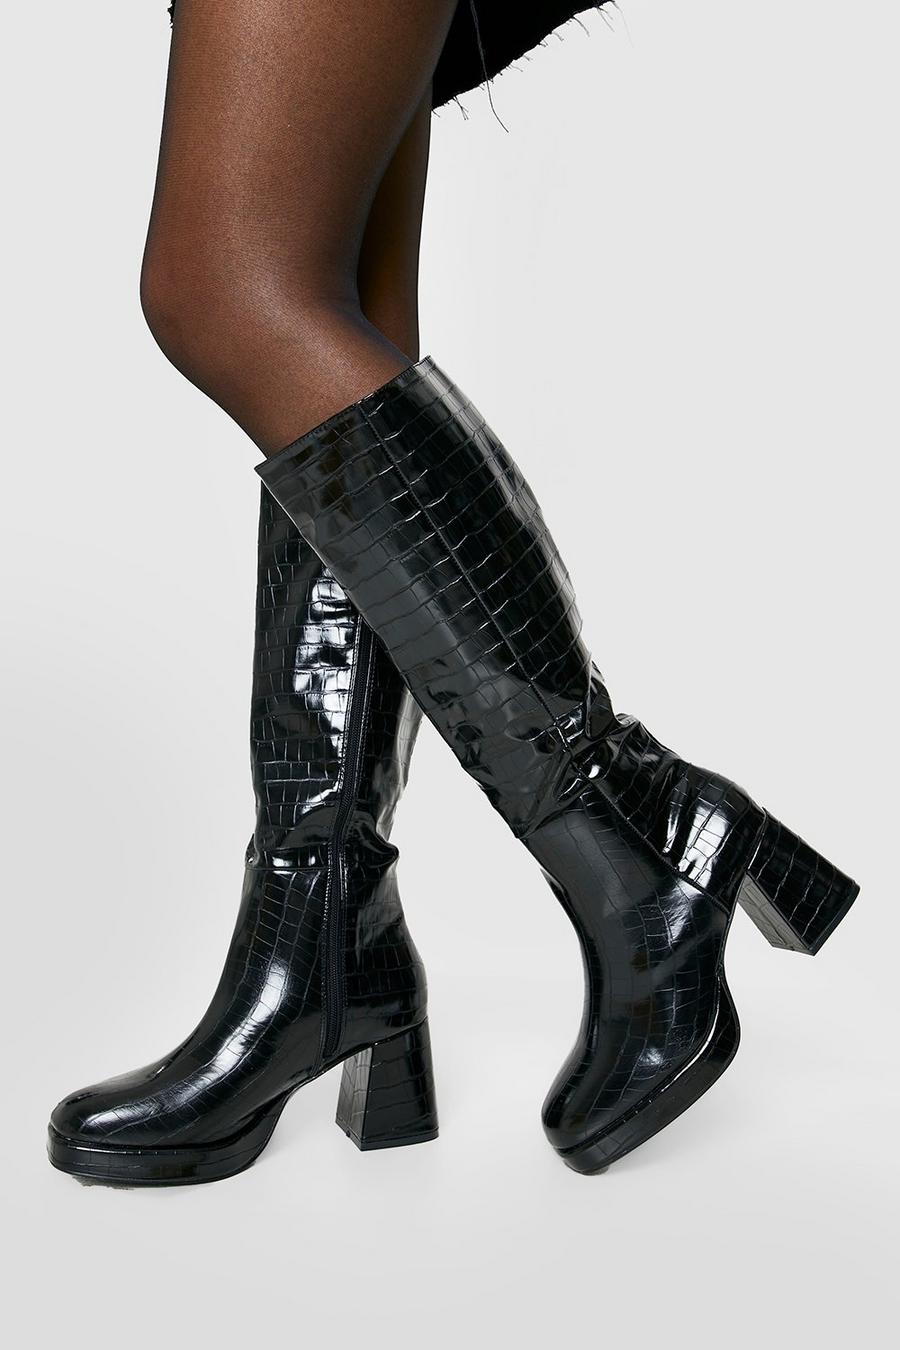 Black Croc Block Heel Knee High Boots